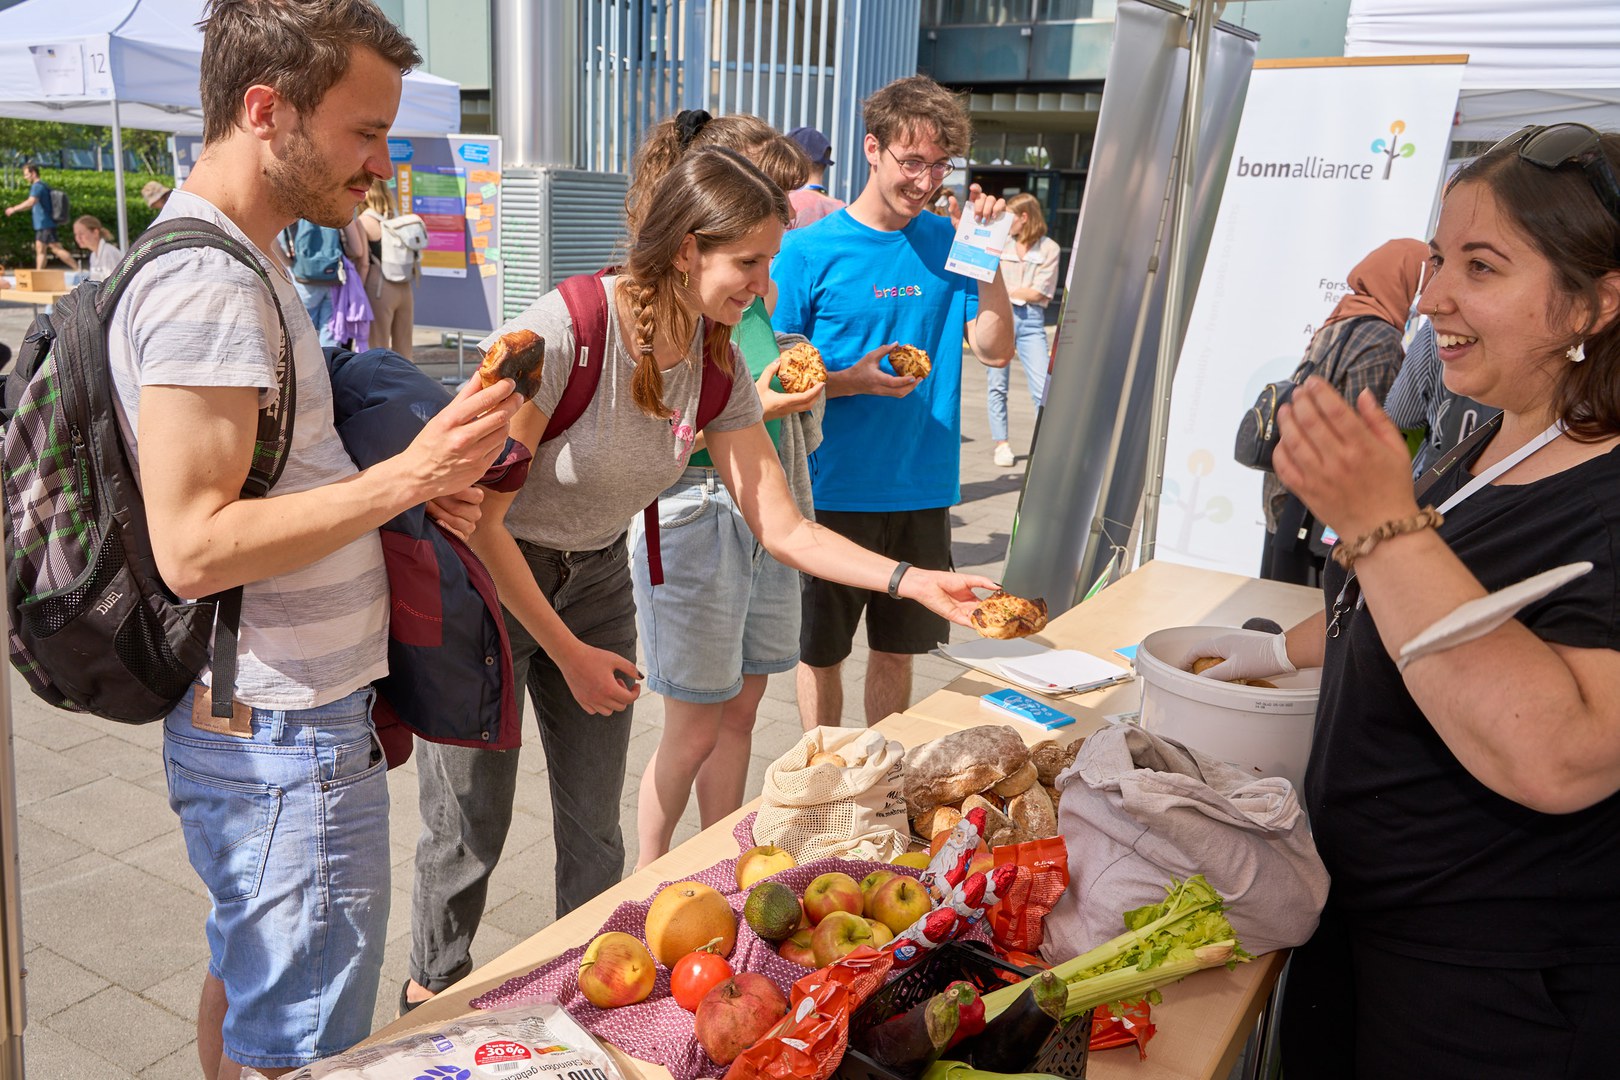 Kam gut an: foodsharing Bonn verteilte gerettete Lebensmittel - und gab gleichzeitig Praxistipps und Infos zum Thema "Lebensmittelverschwendung".